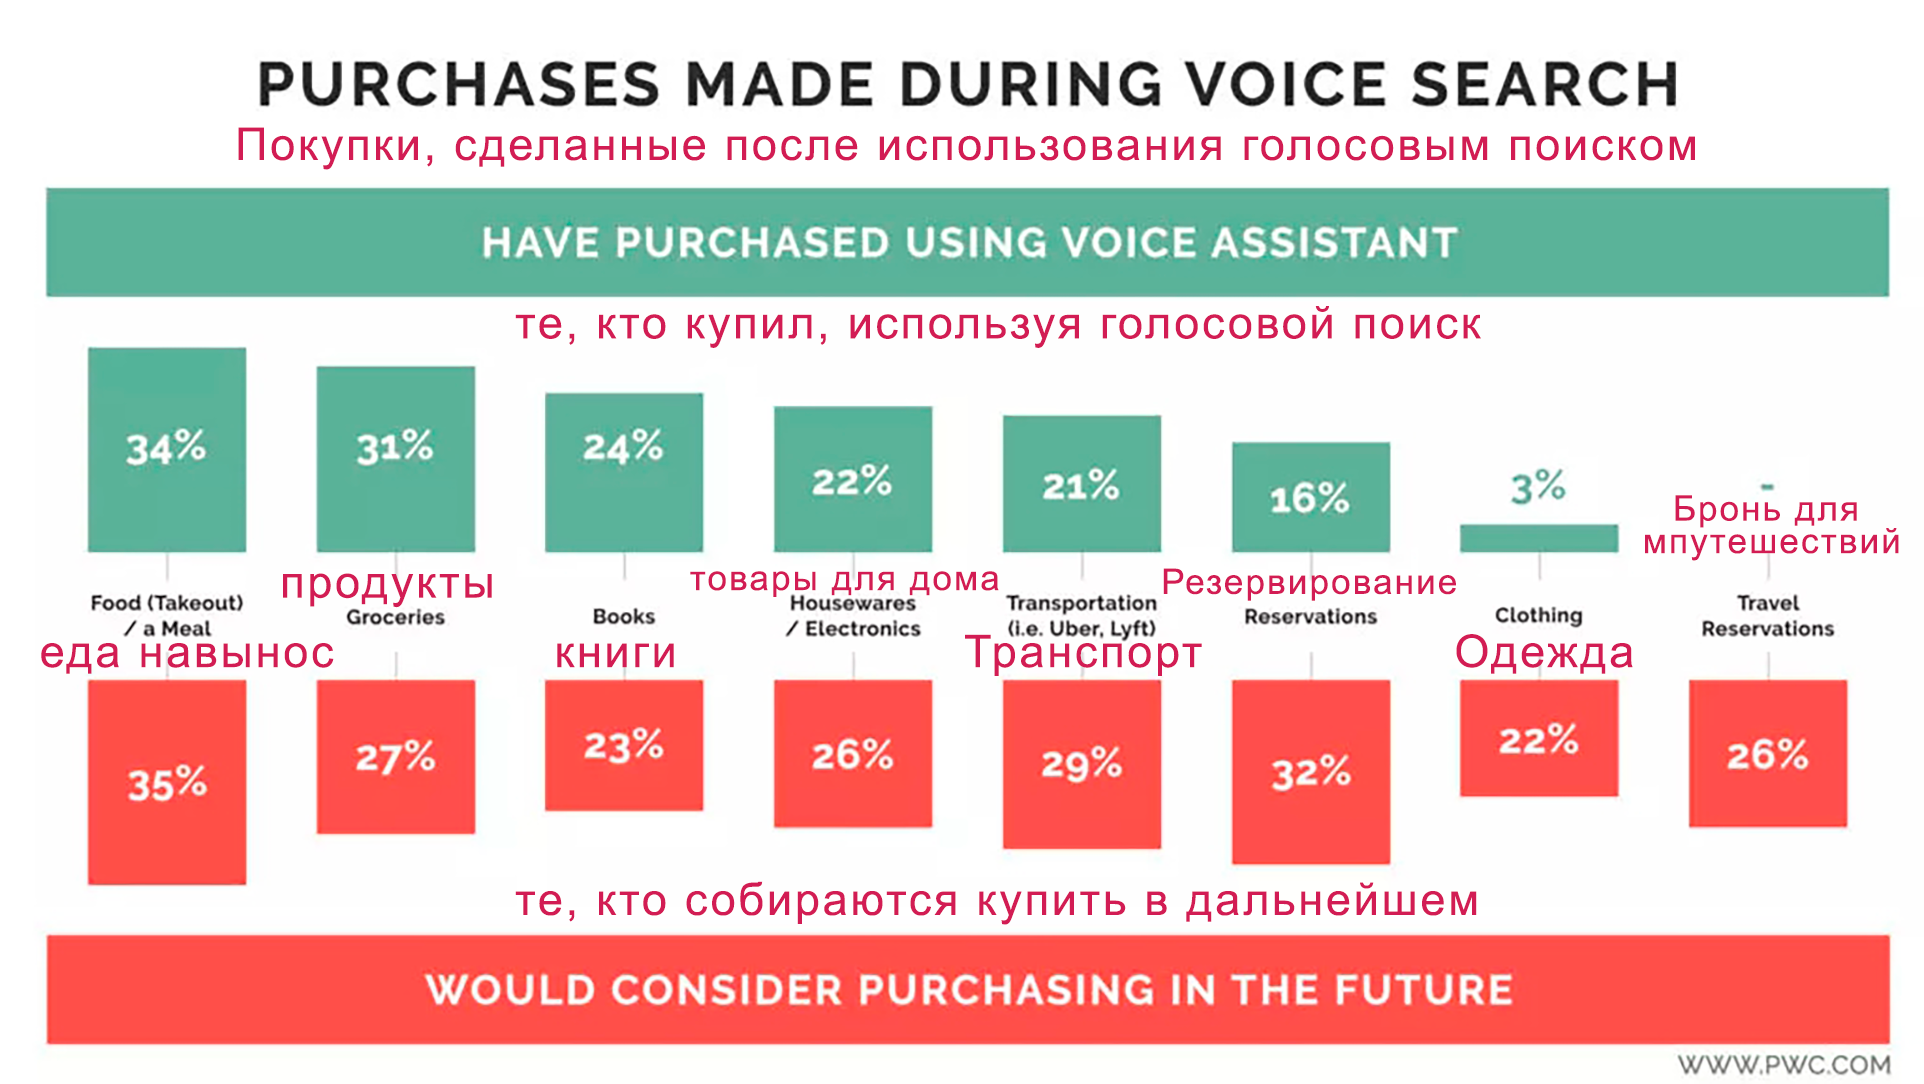 Как SEO голосового поиска повлияет на продажи в ecommerce: инфографика - покупки, сделанные благодаря голосовому поиску